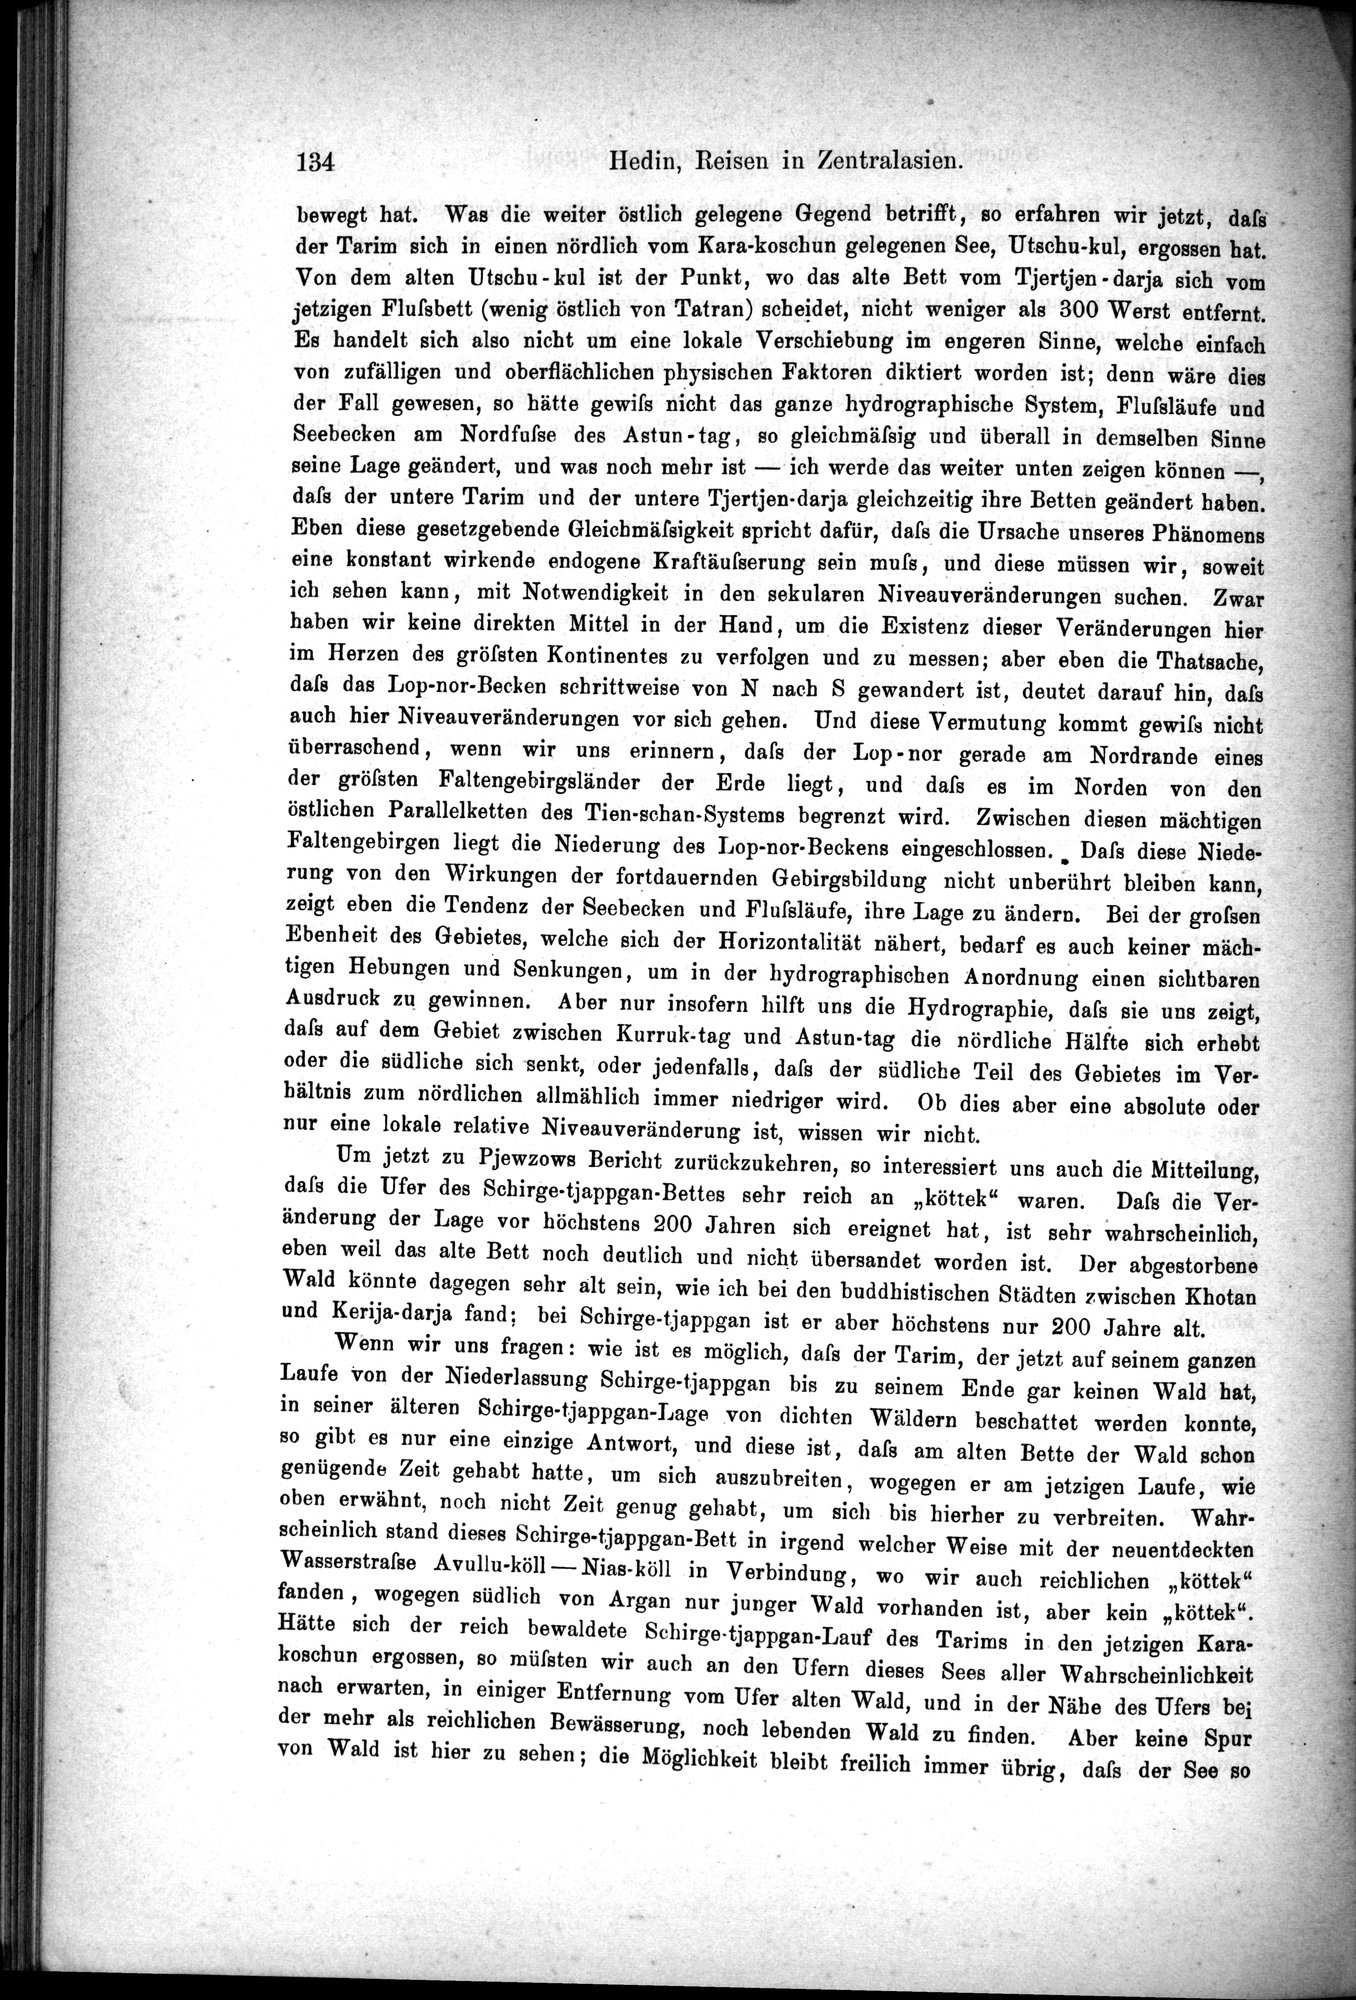 Die Geographische-Wissenschaftlichen Ergebnisse meiner Reisen in Zentralasien, 1894-1897 : vol.1 / Page 146 (Grayscale High Resolution Image)